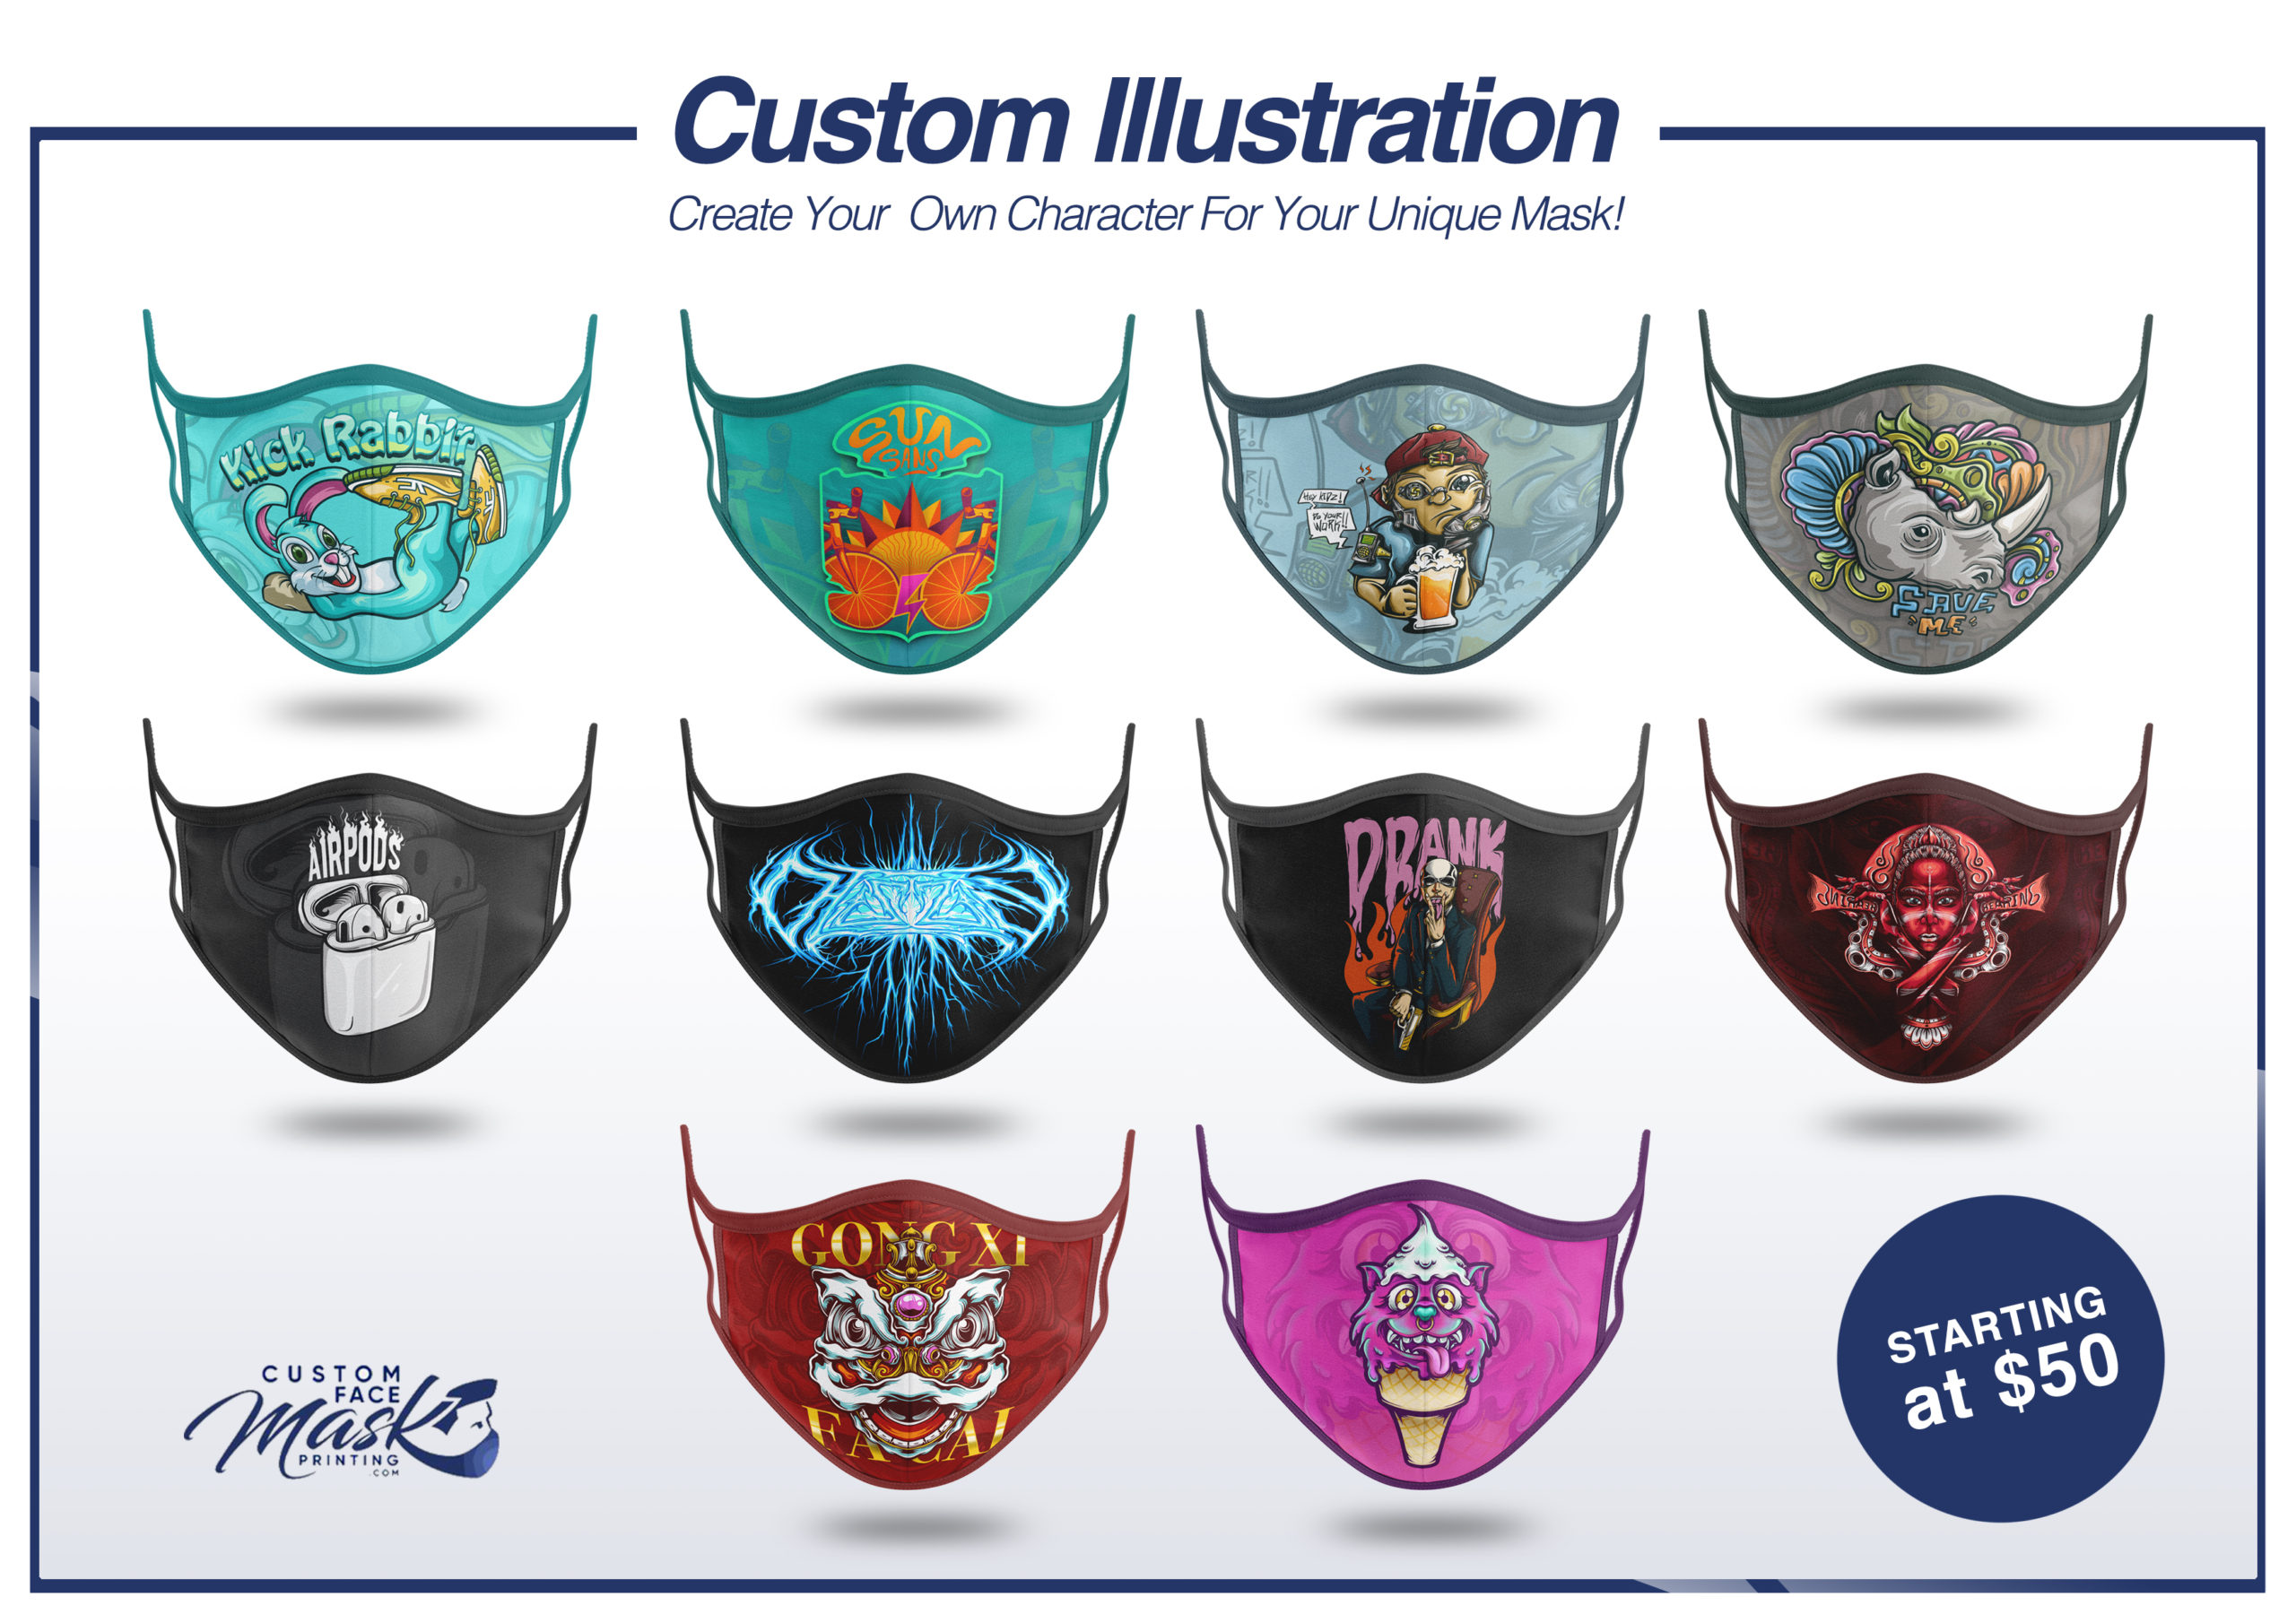  custom illustrations for mascot or logo 